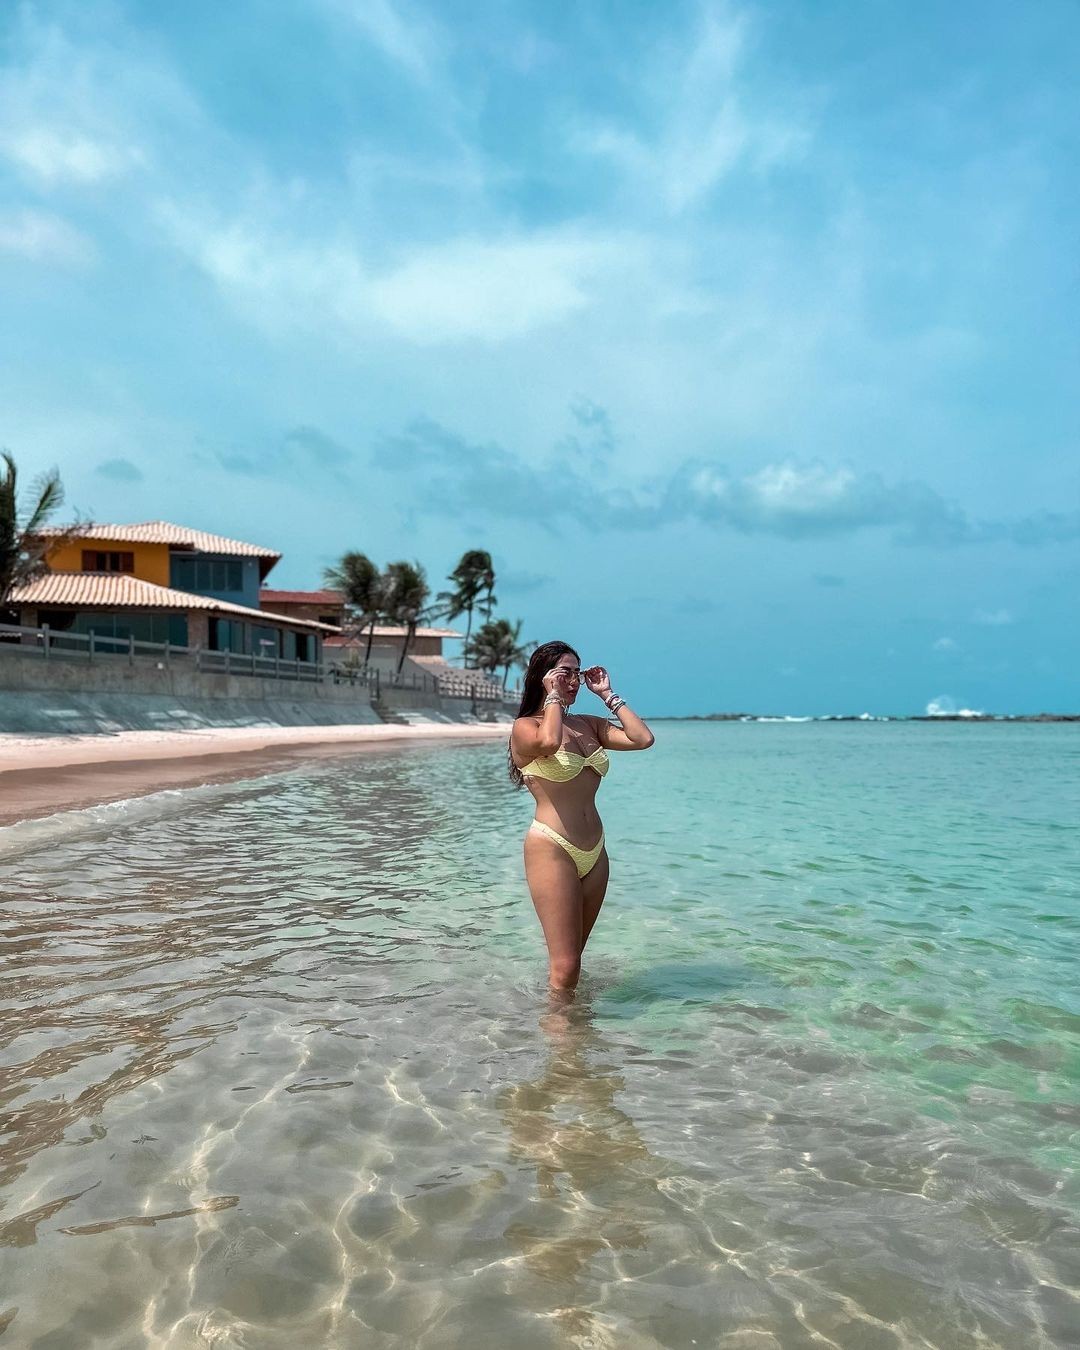 Jéssica Beatriz posa em cenário paradisíaco em praia do nordeste (Foto: reprodução/instagram)